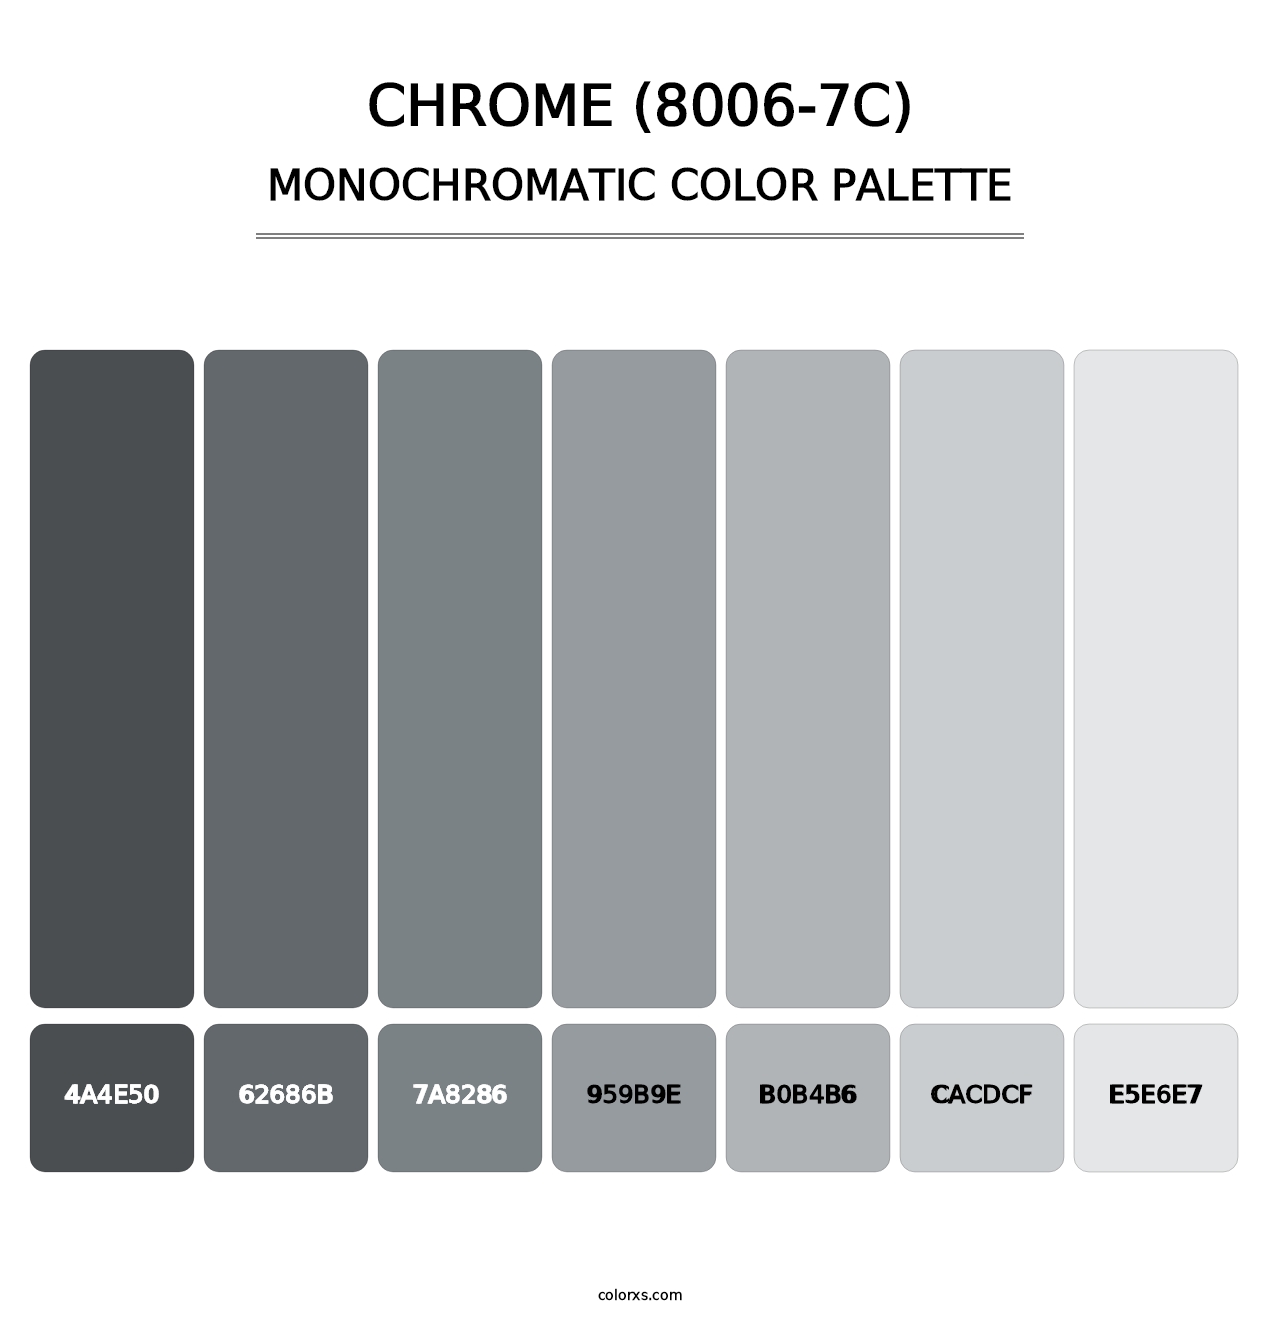 Chrome (8006-7C) - Monochromatic Color Palette